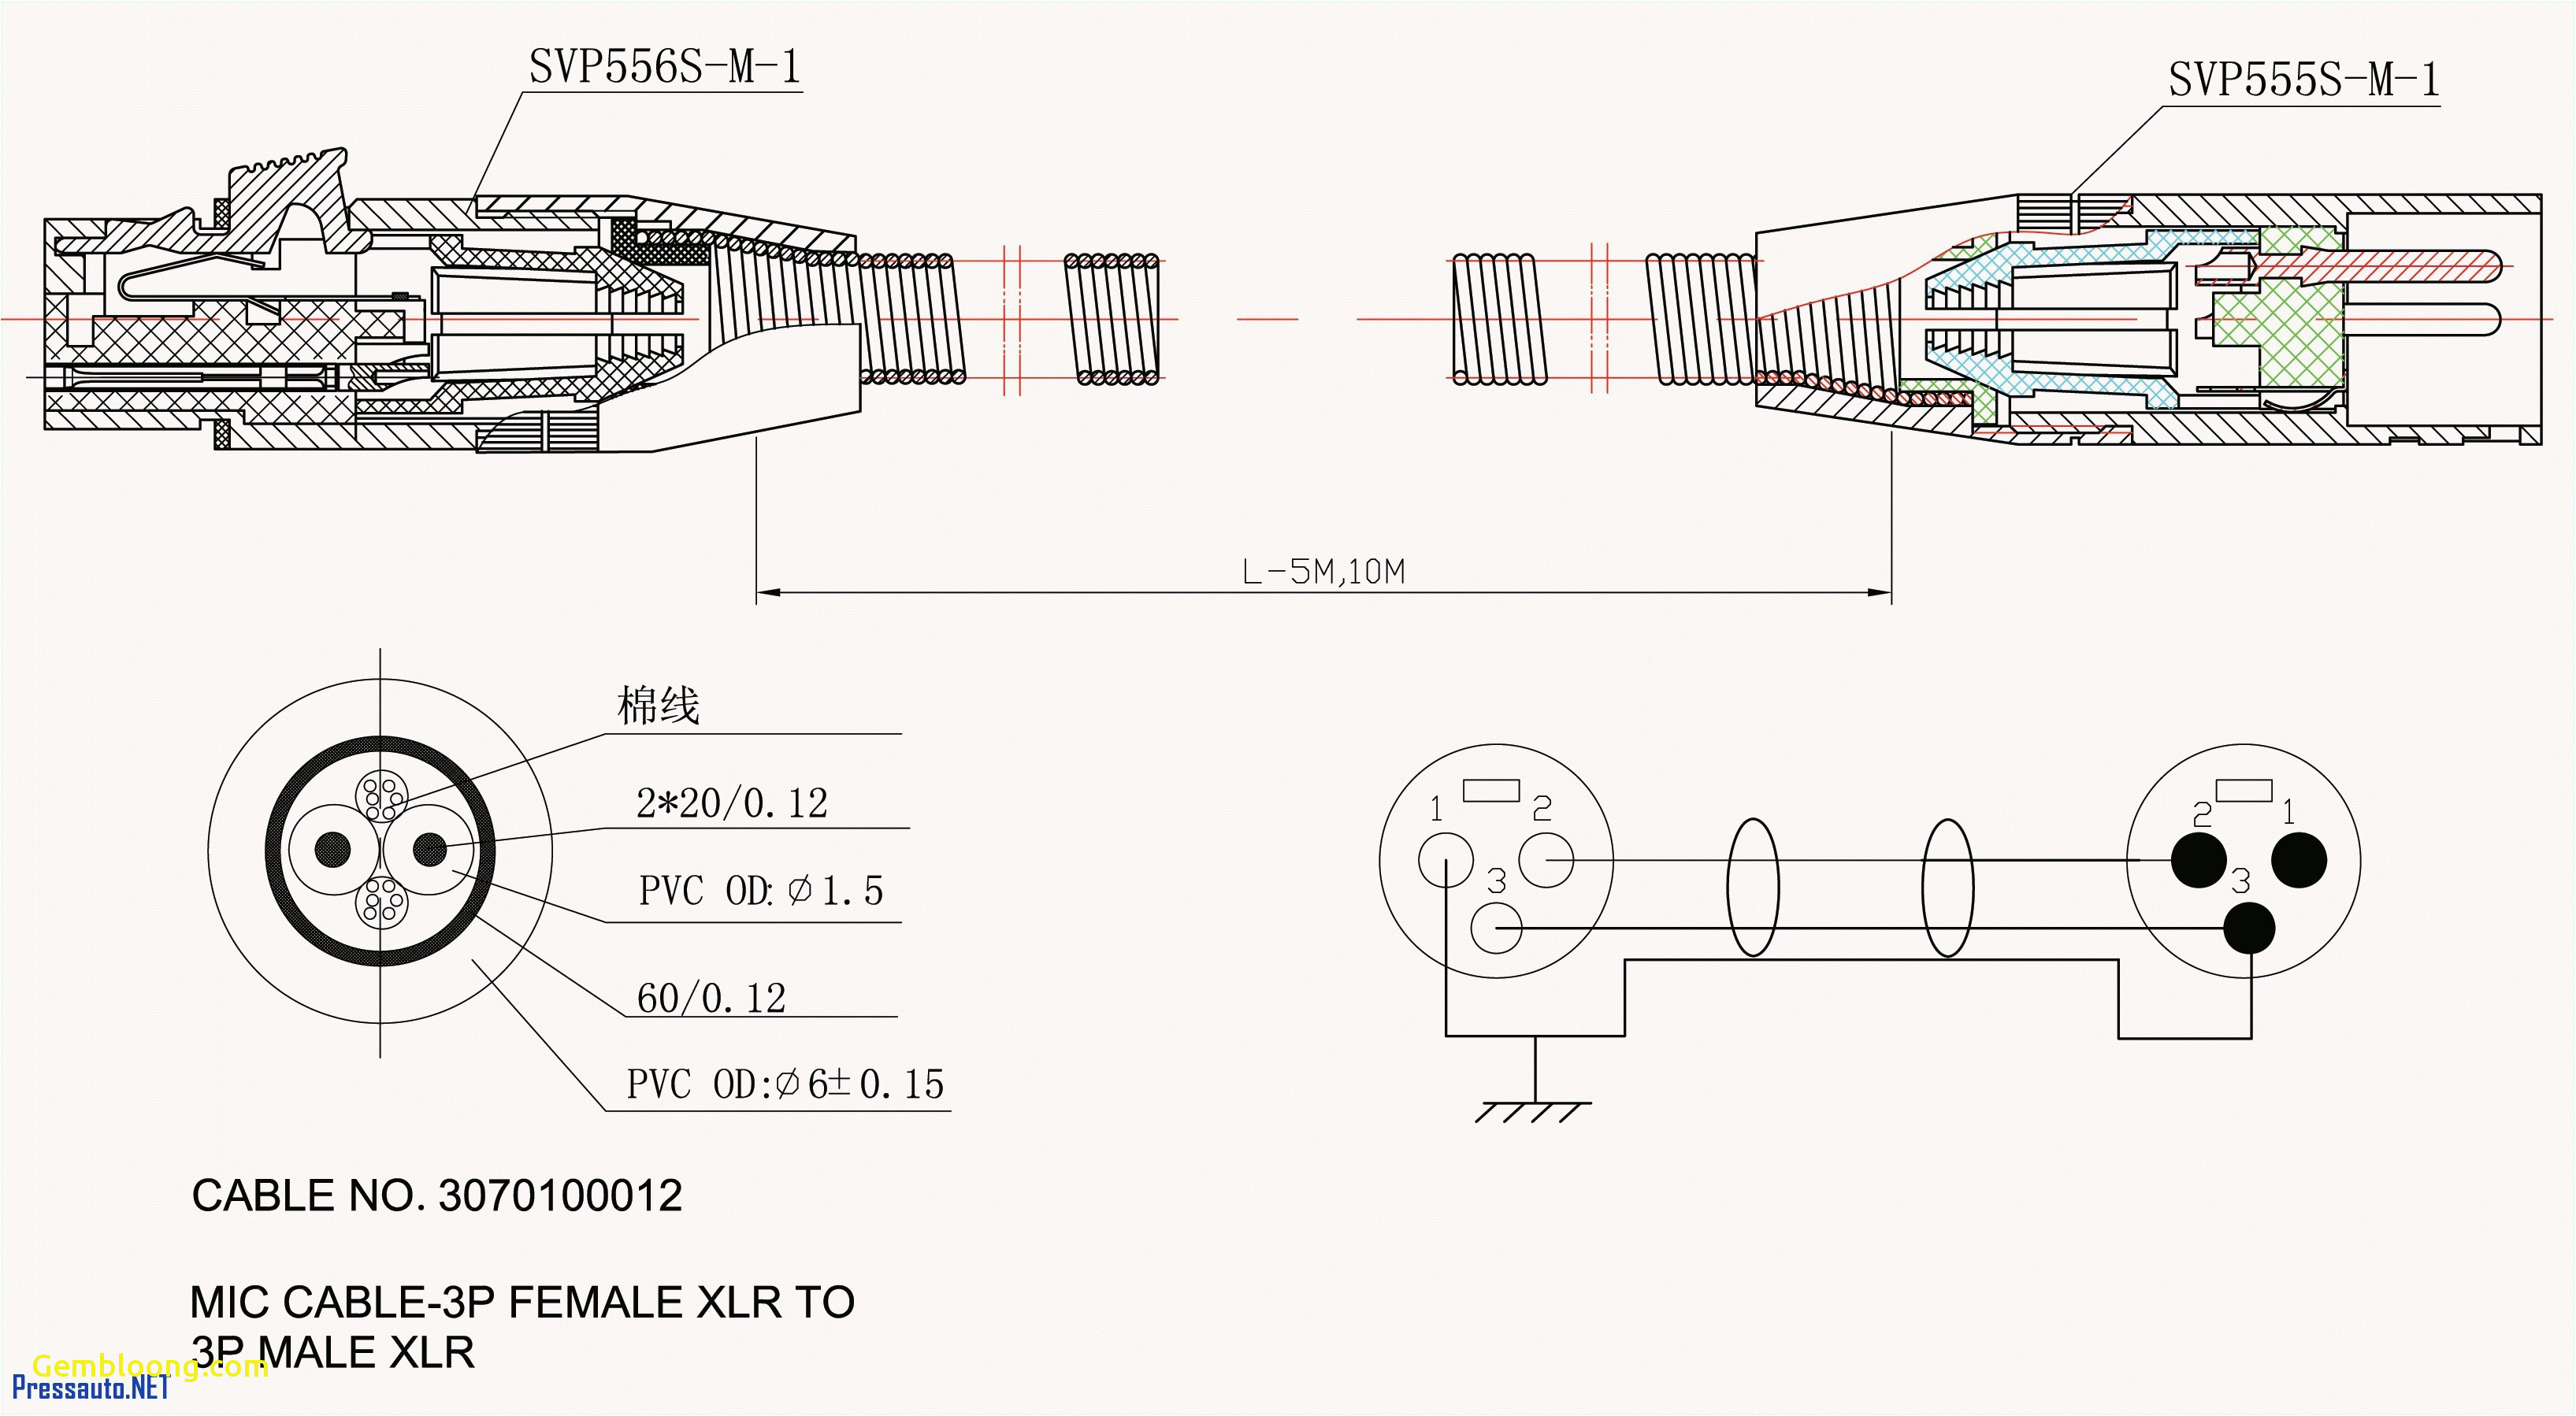 suzuki alternator wiring wiring diagram 207 dodge alternator wiring diagram